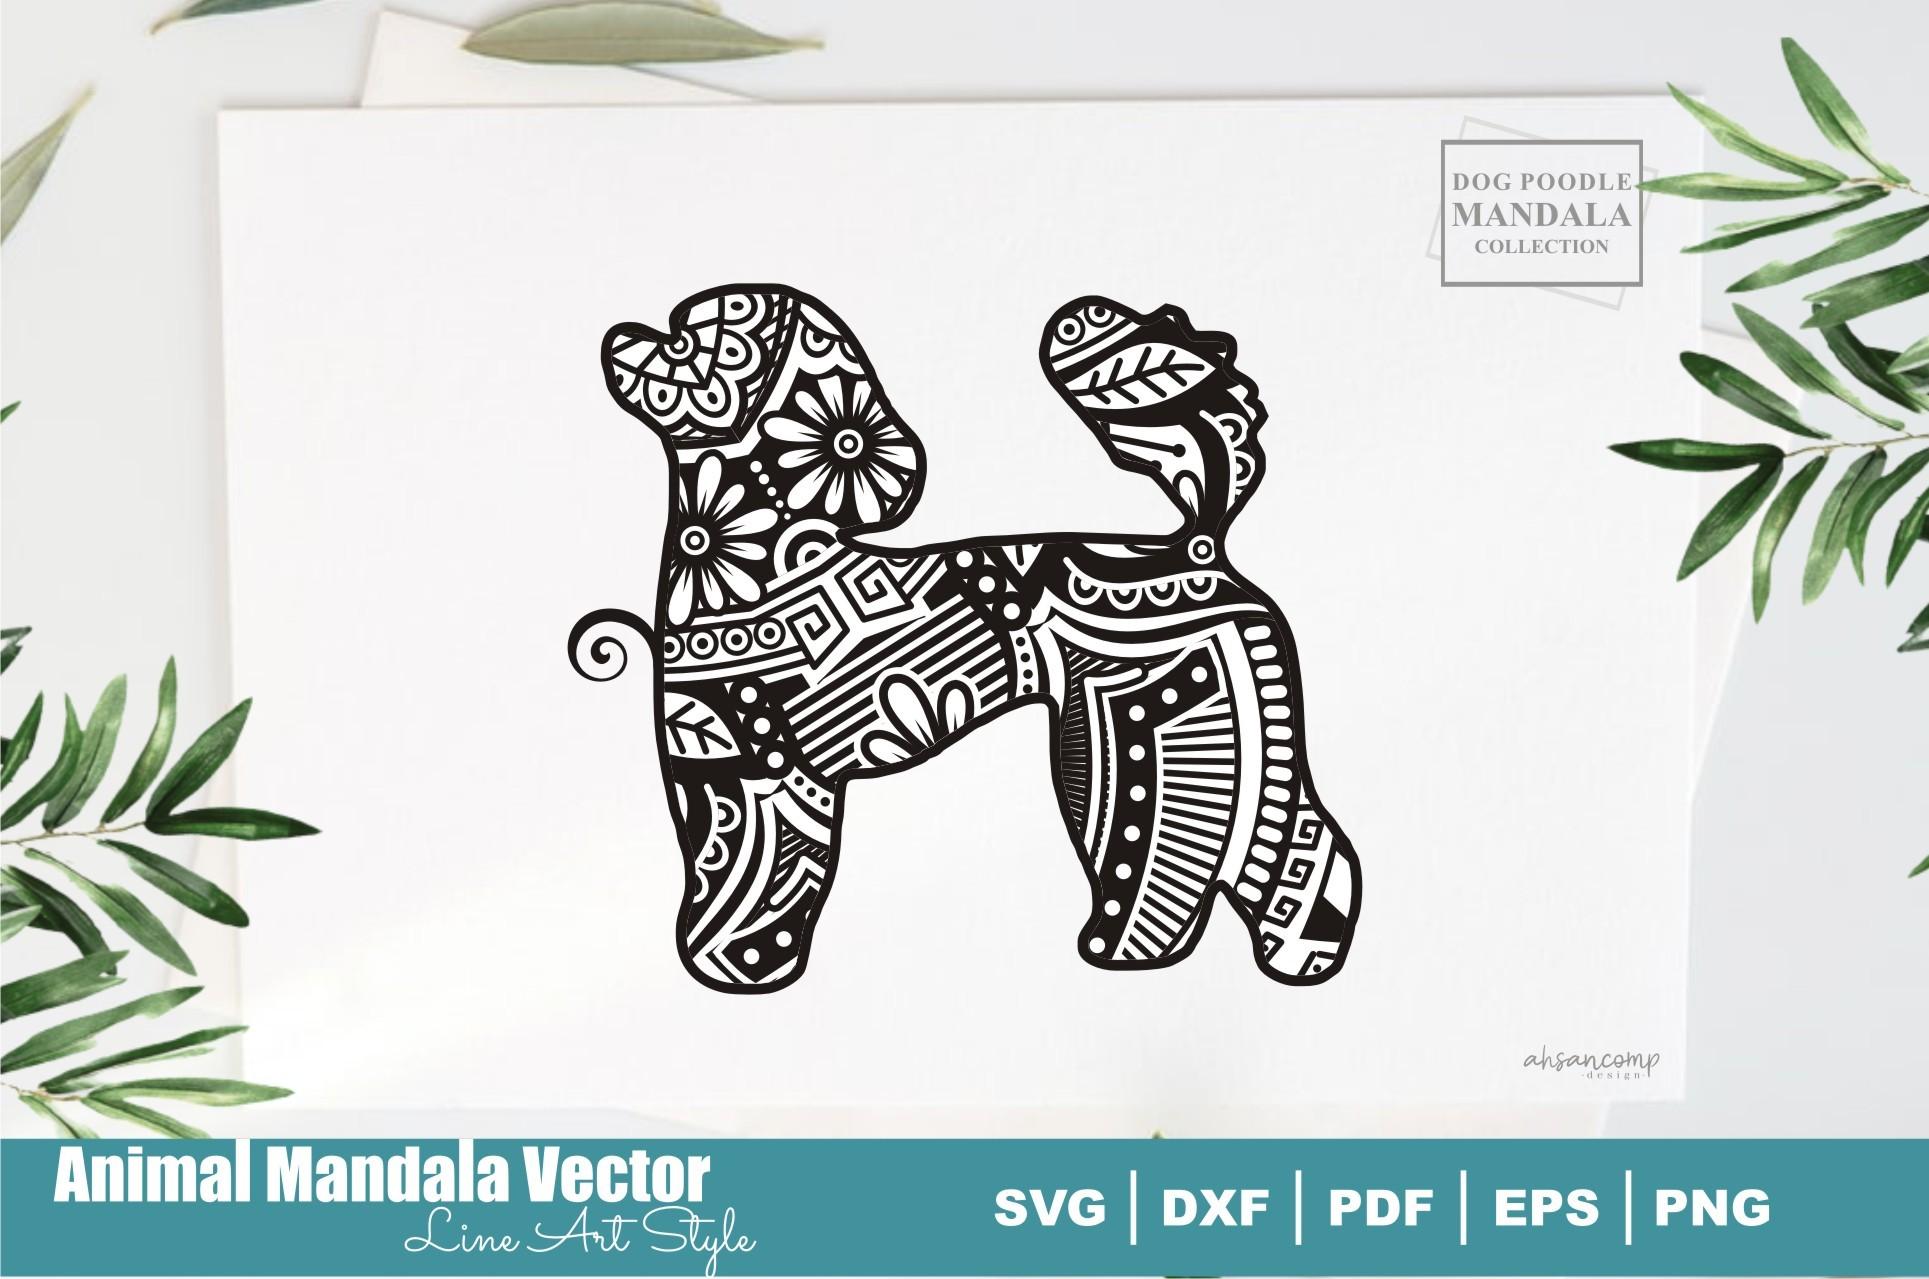 Dog Poodle Mandala #27. Boho Style SVG